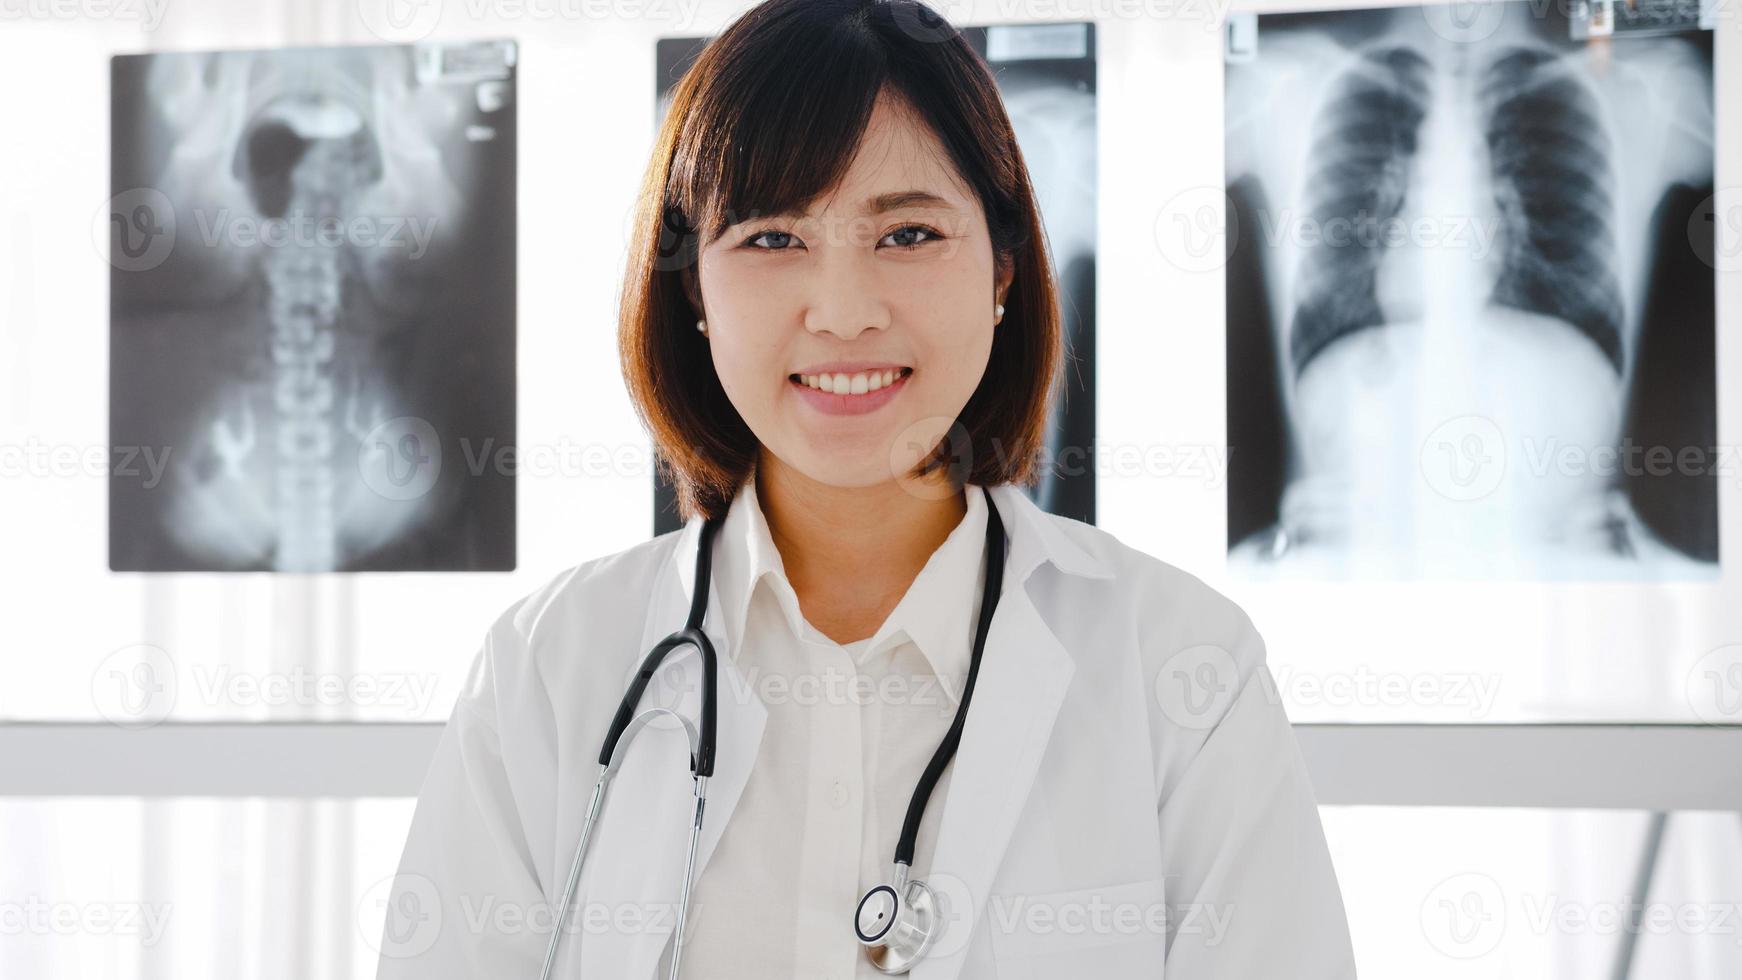 jeune femme médecin asiatique confiante en uniforme médical blanc avec stéthoscope regardant la caméra et souriant lors d'une vidéoconférence avec un patient dans un hôpital de santé. concept de conseil et de thérapie. photo